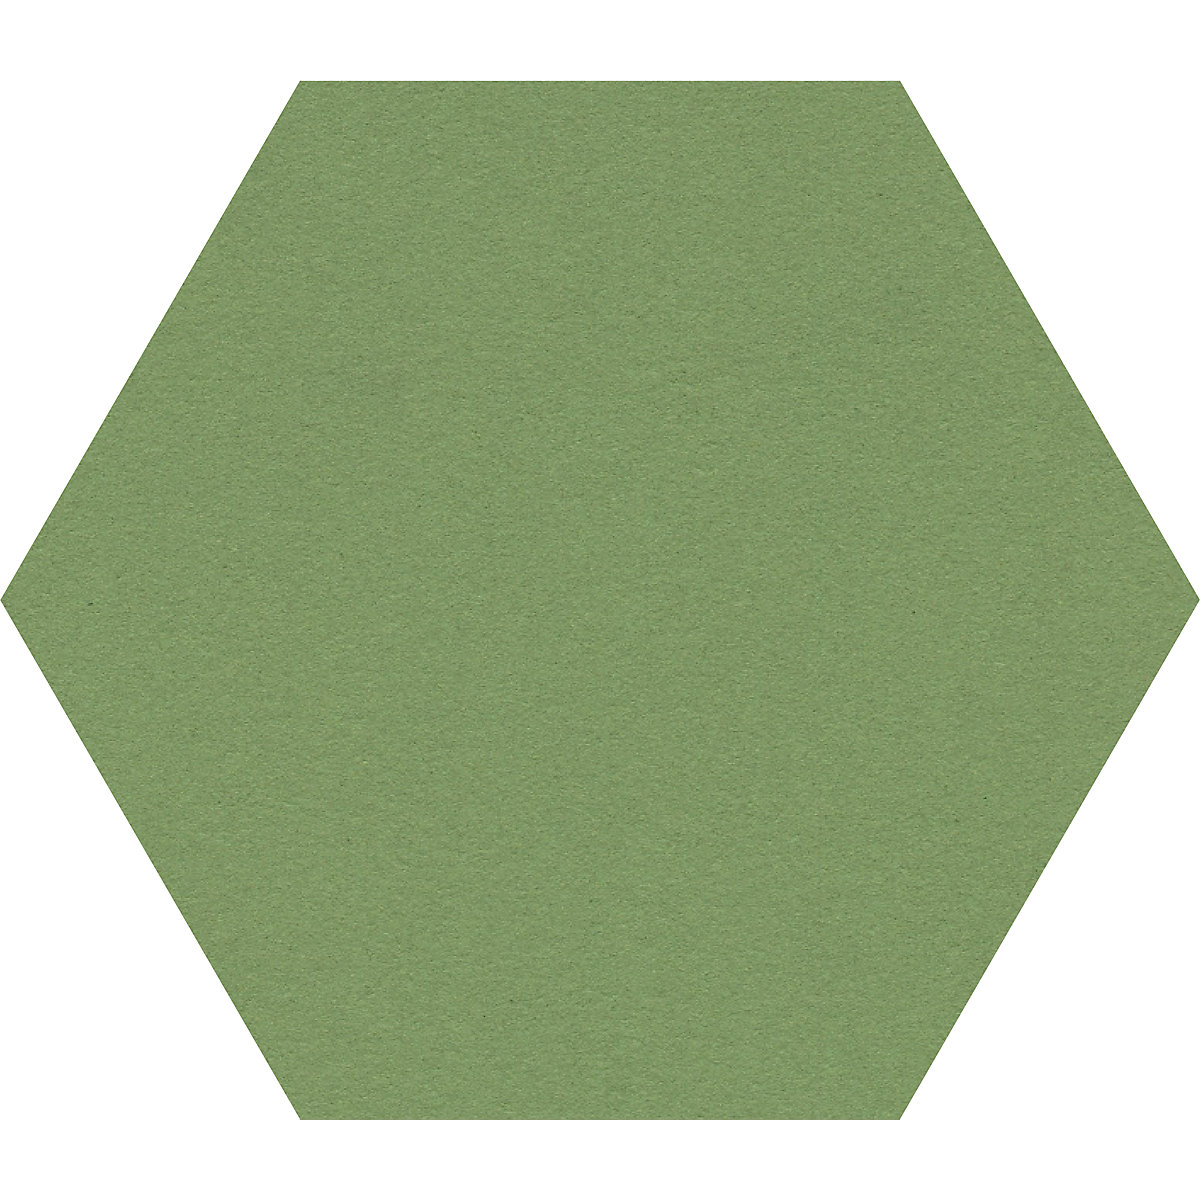 Quadro de pinos com design hexagonal – Chameleon, cortiça, LxA 600 x 600 mm, verde-30